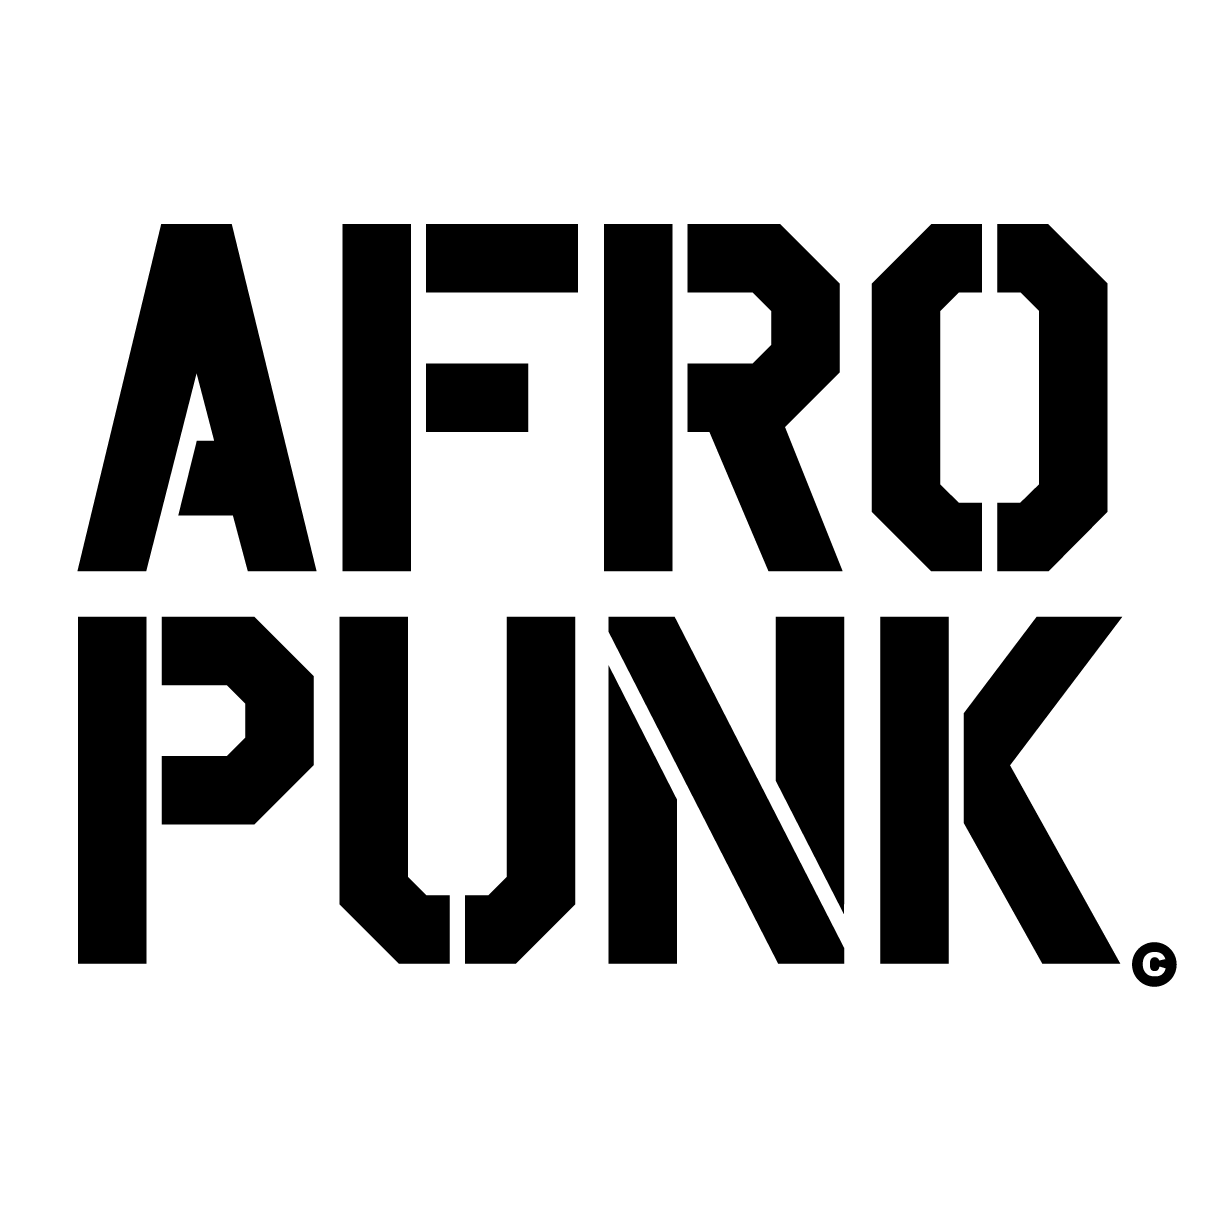 Afropunk logo